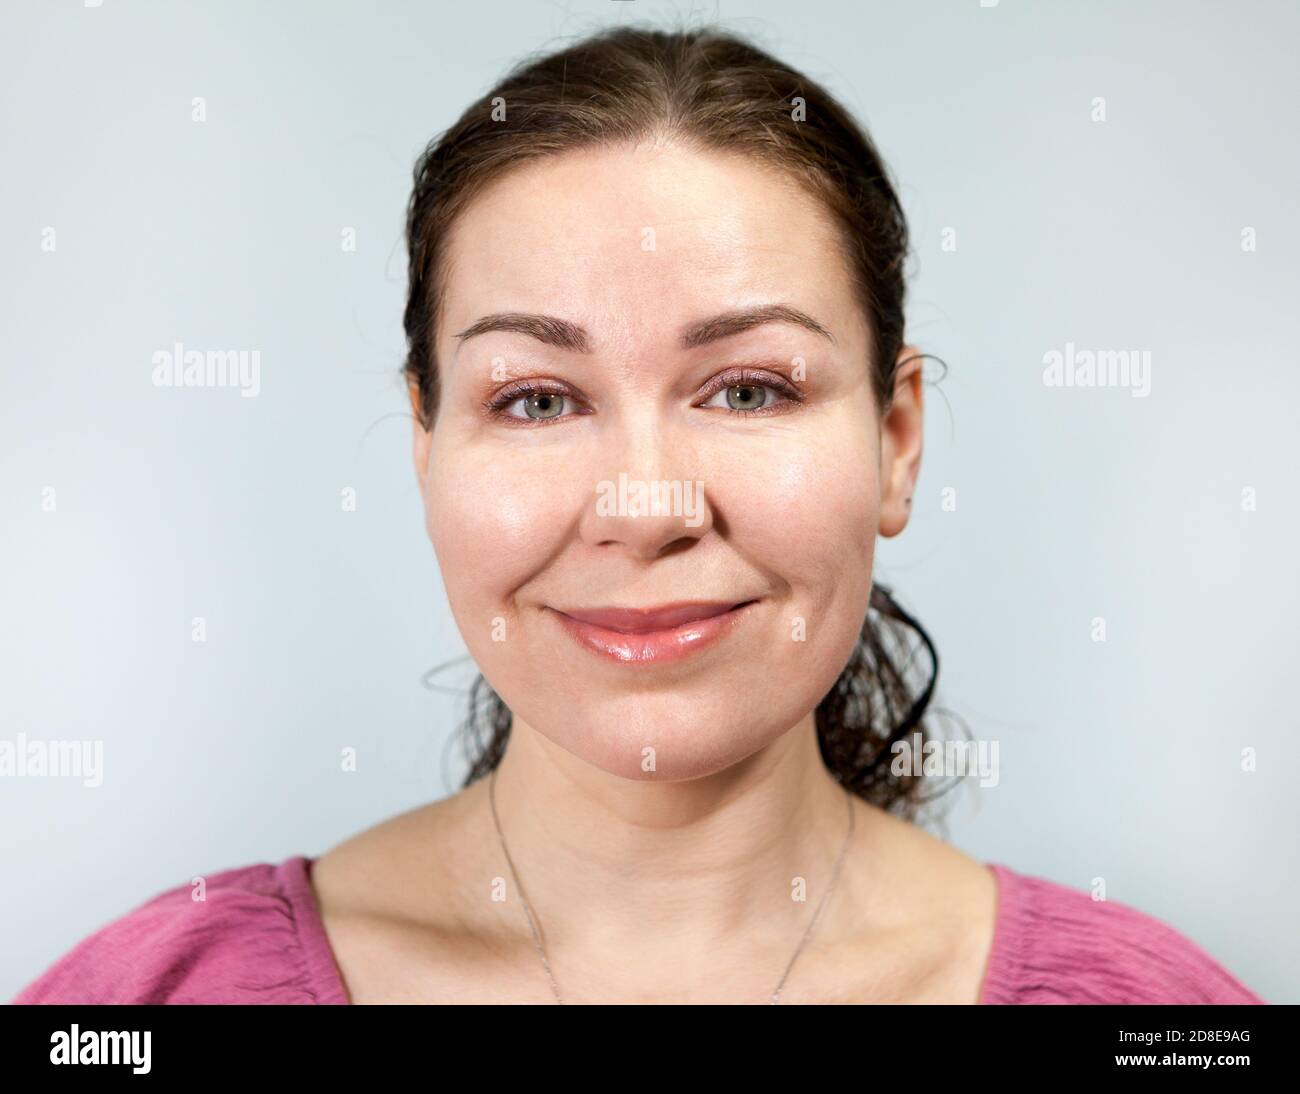 Lächelnd gutmütige kaukasische Erwachsene Frau, Porträt auf grauem Hintergrund, Emotionen-Serie Stockfoto